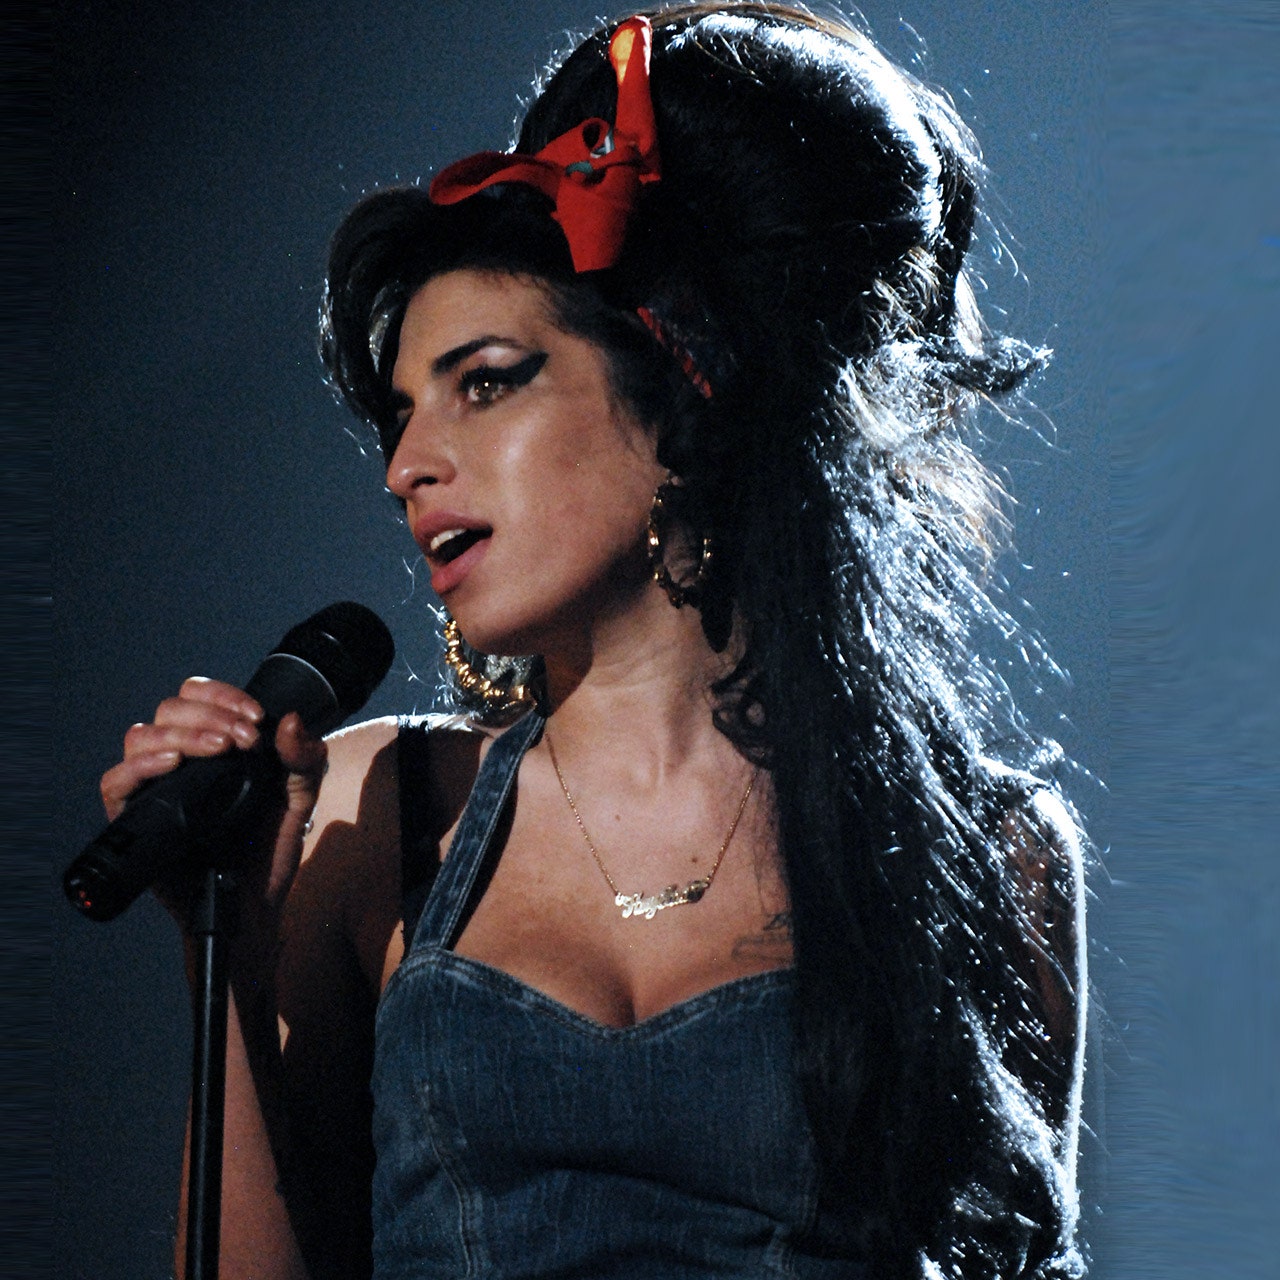 Amy Winehouse is not dead